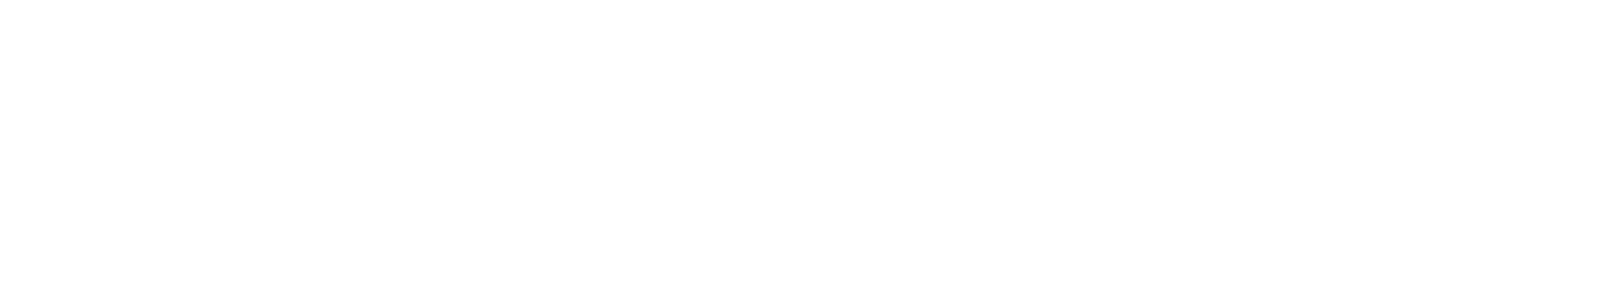 Onex logo large for dark backgrounds (transparent PNG)